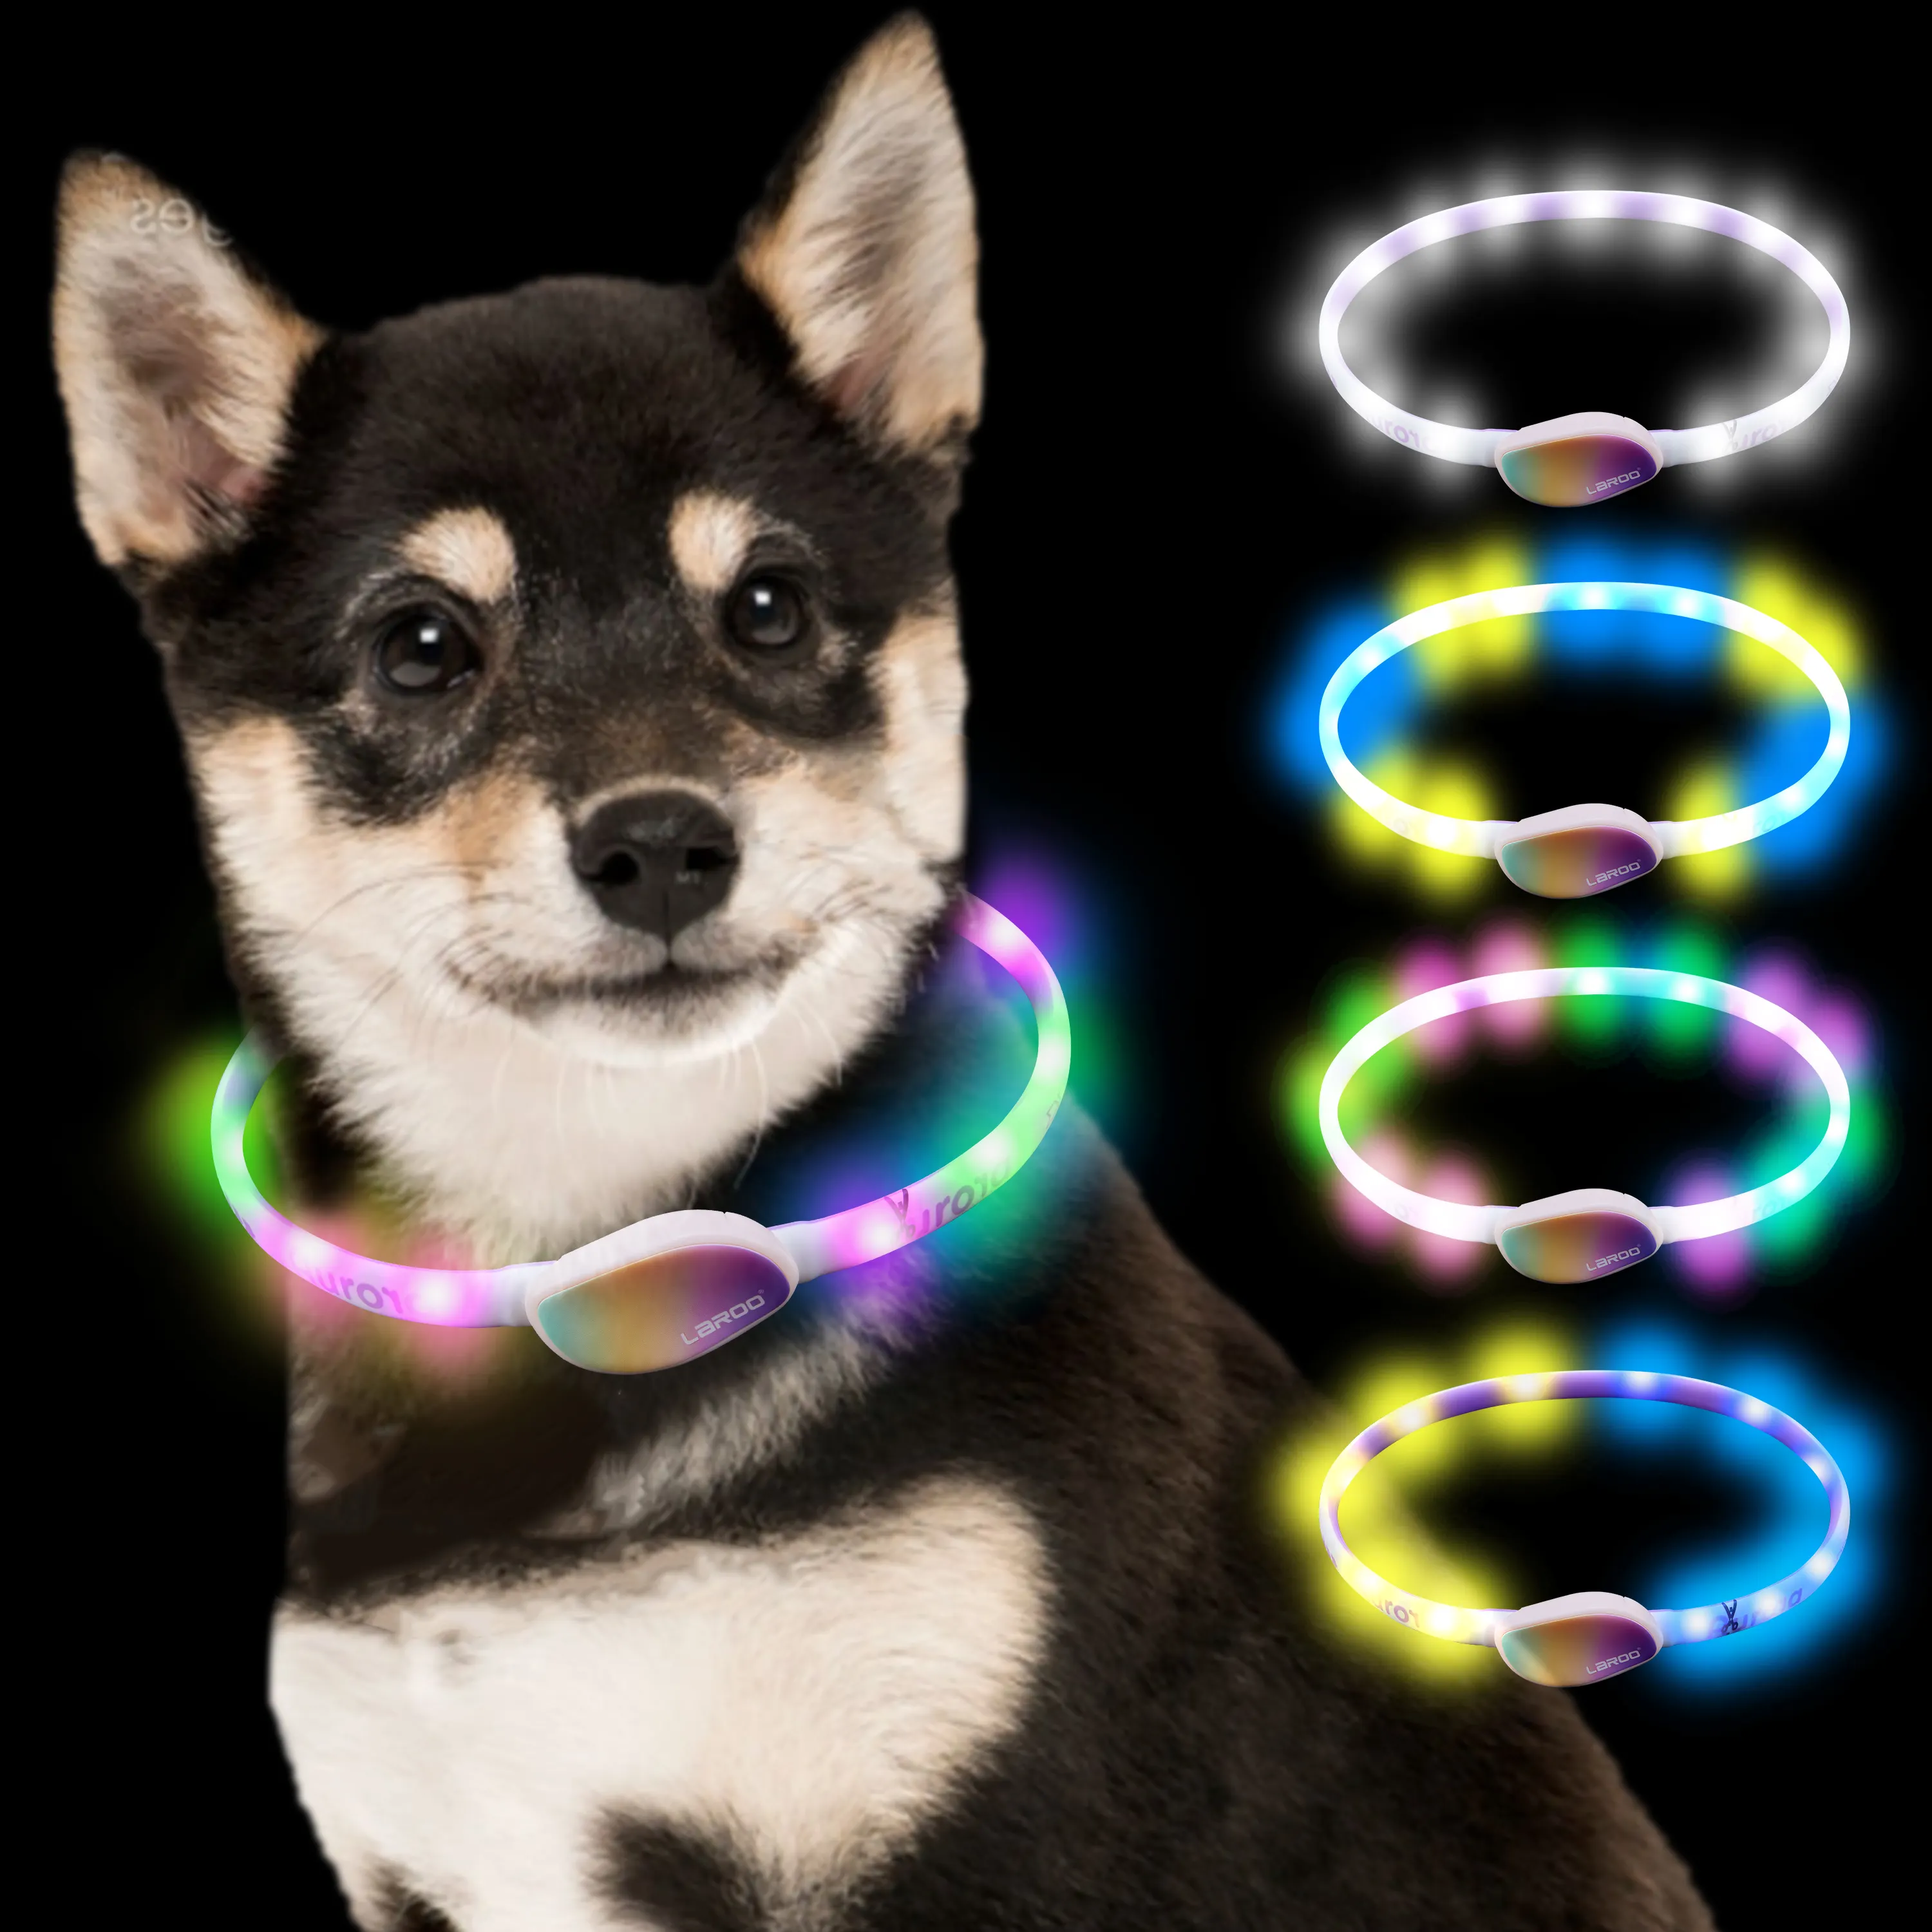 Aroo-Anillo de luz led para collar de perro, accesorio recargable